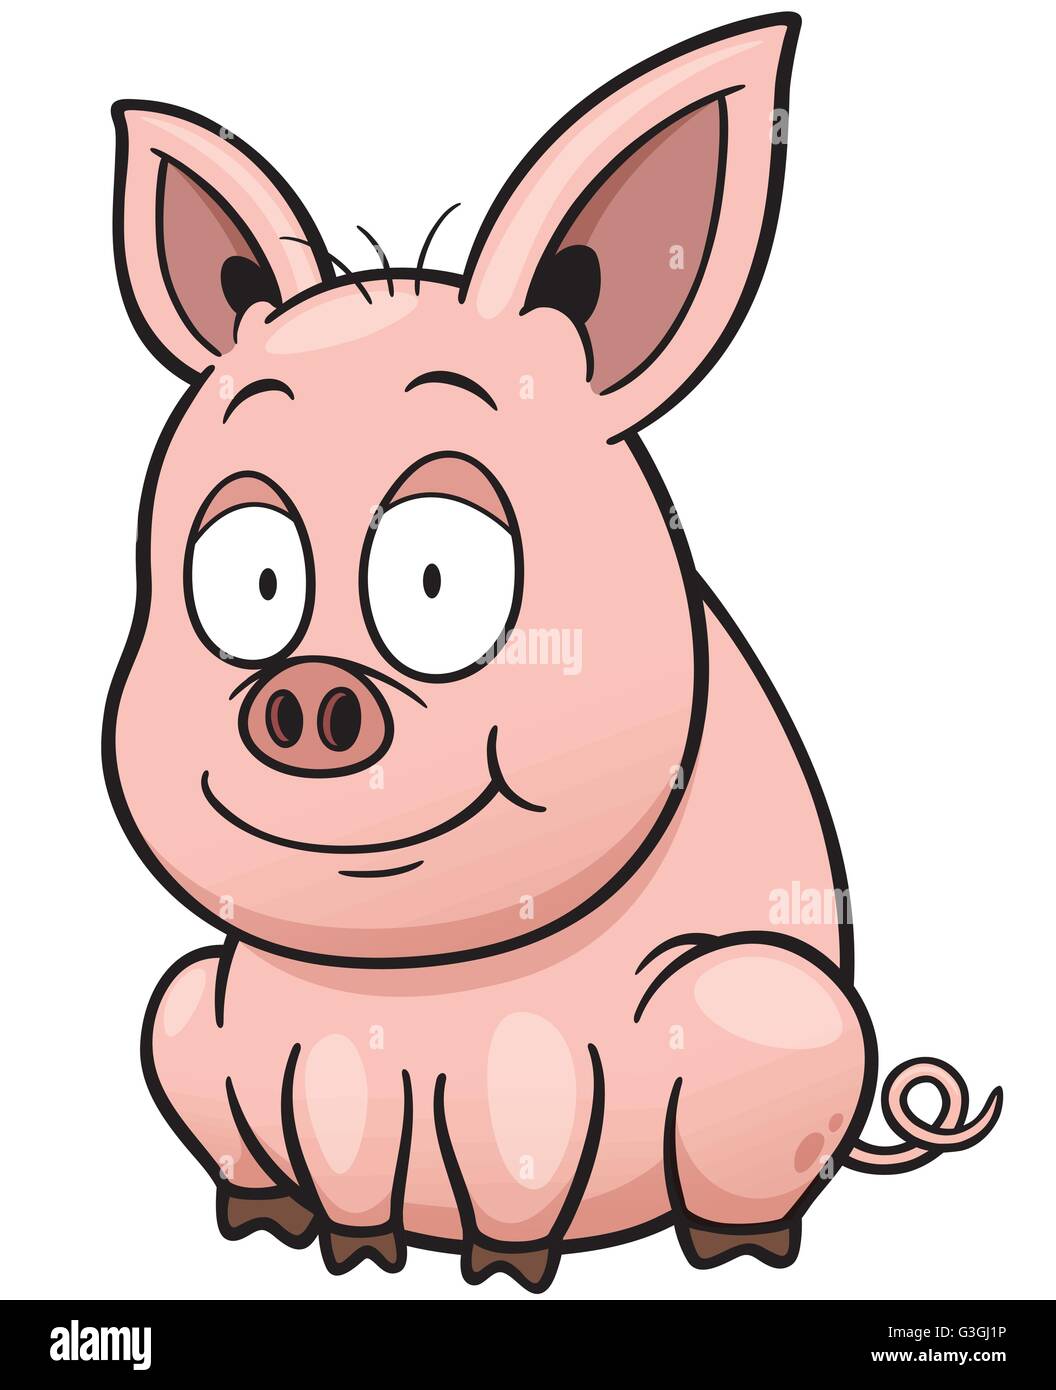 Illustrazione Vettoriale di maiale Cartoon Illustrazione Vettoriale